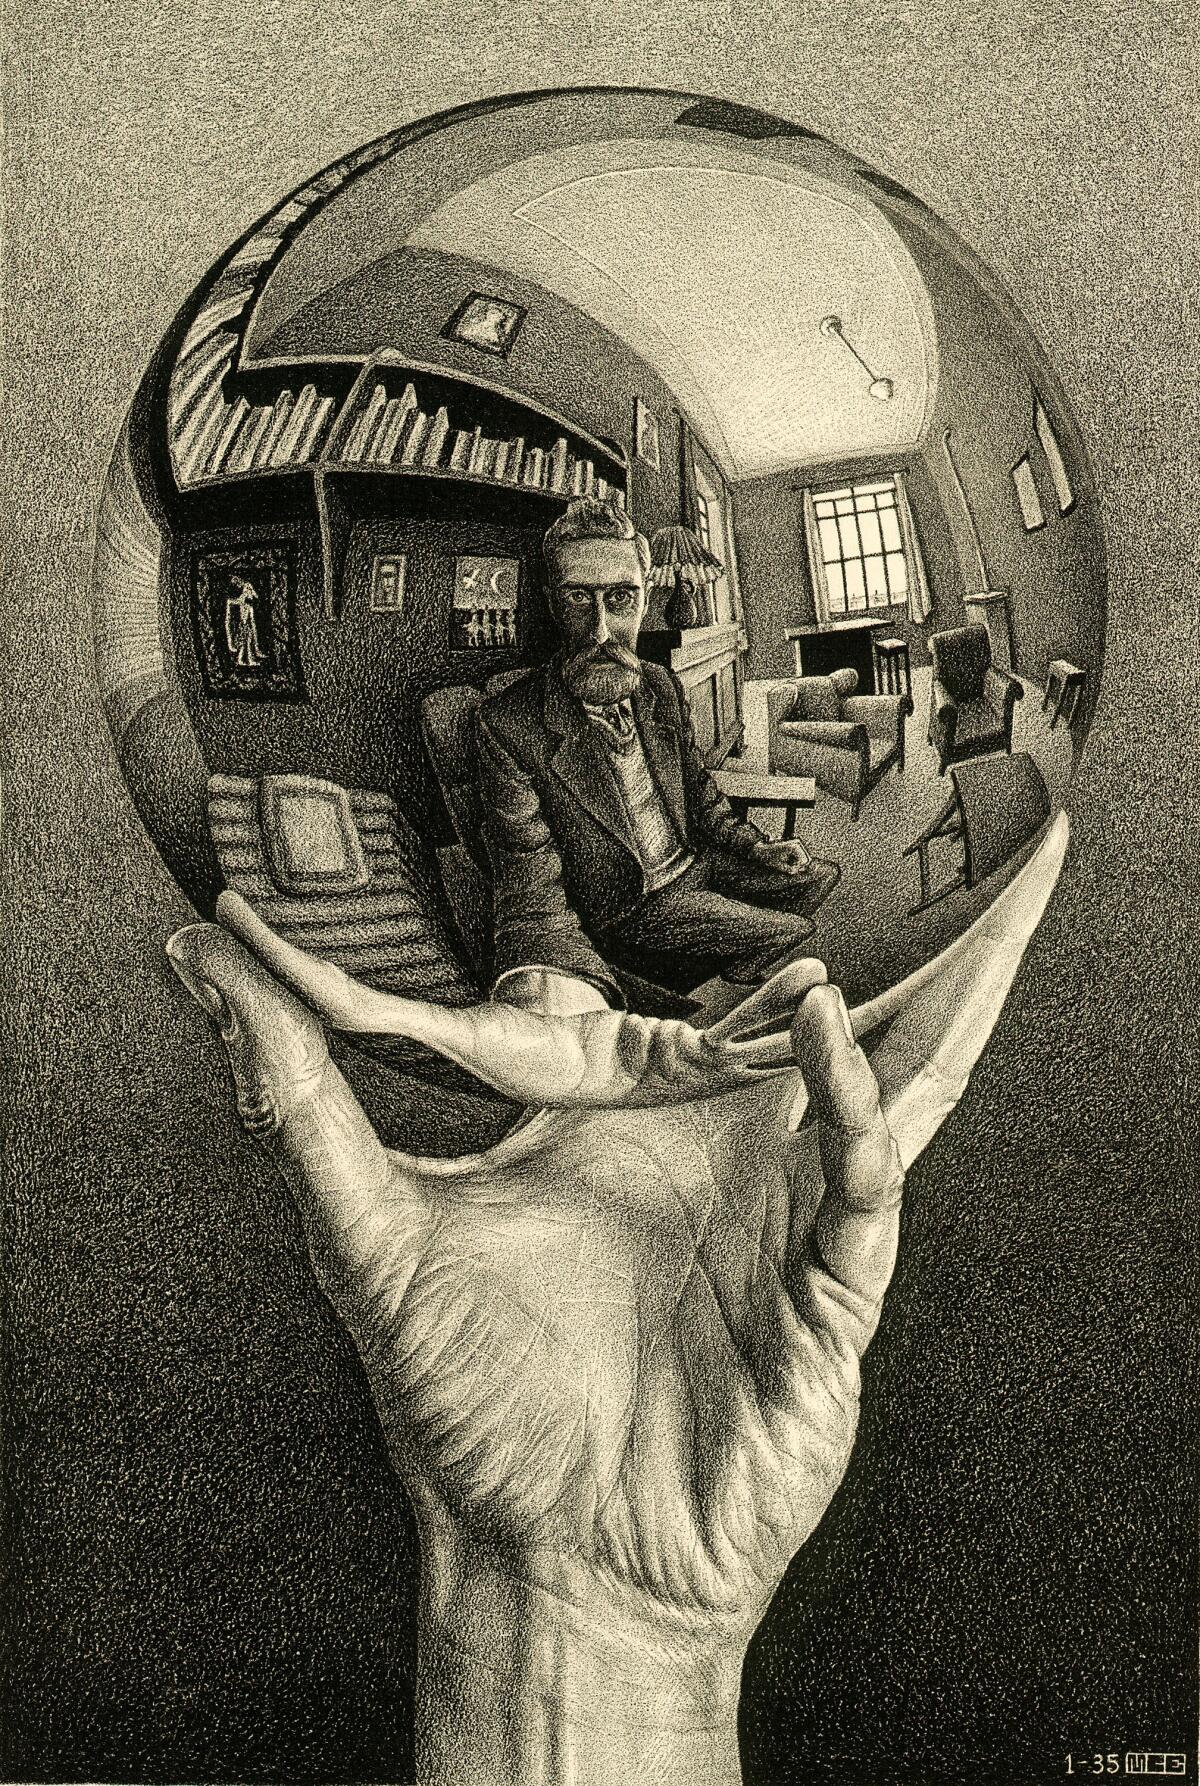 M.C. Escher hand with mirror